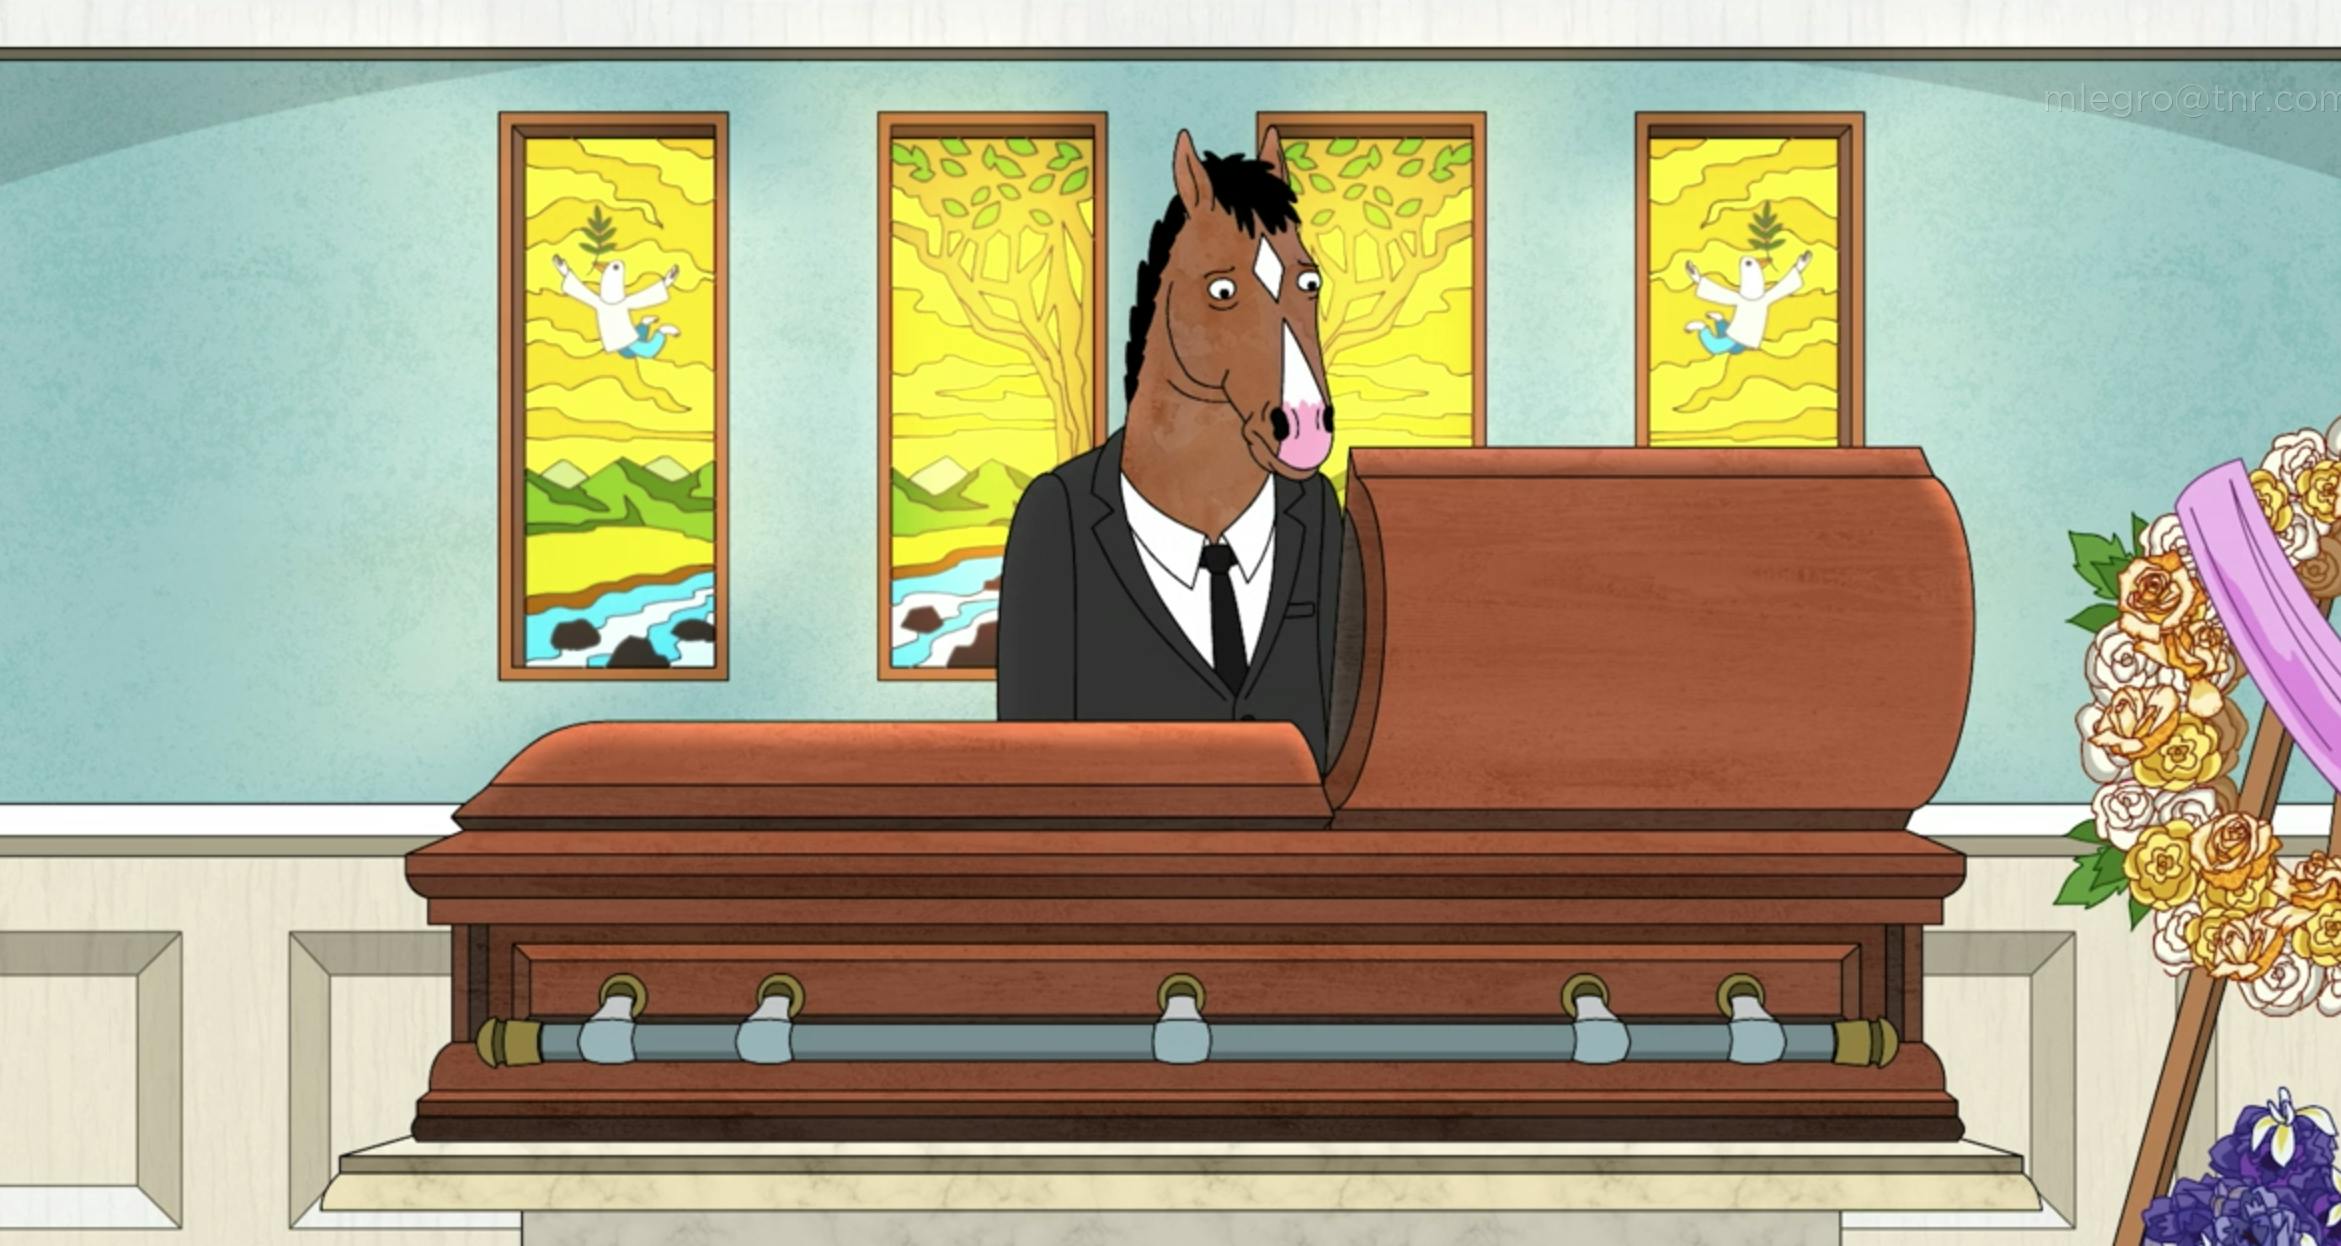 BoJack Horseman season 5 examines the many flavors of sadness - The Verge